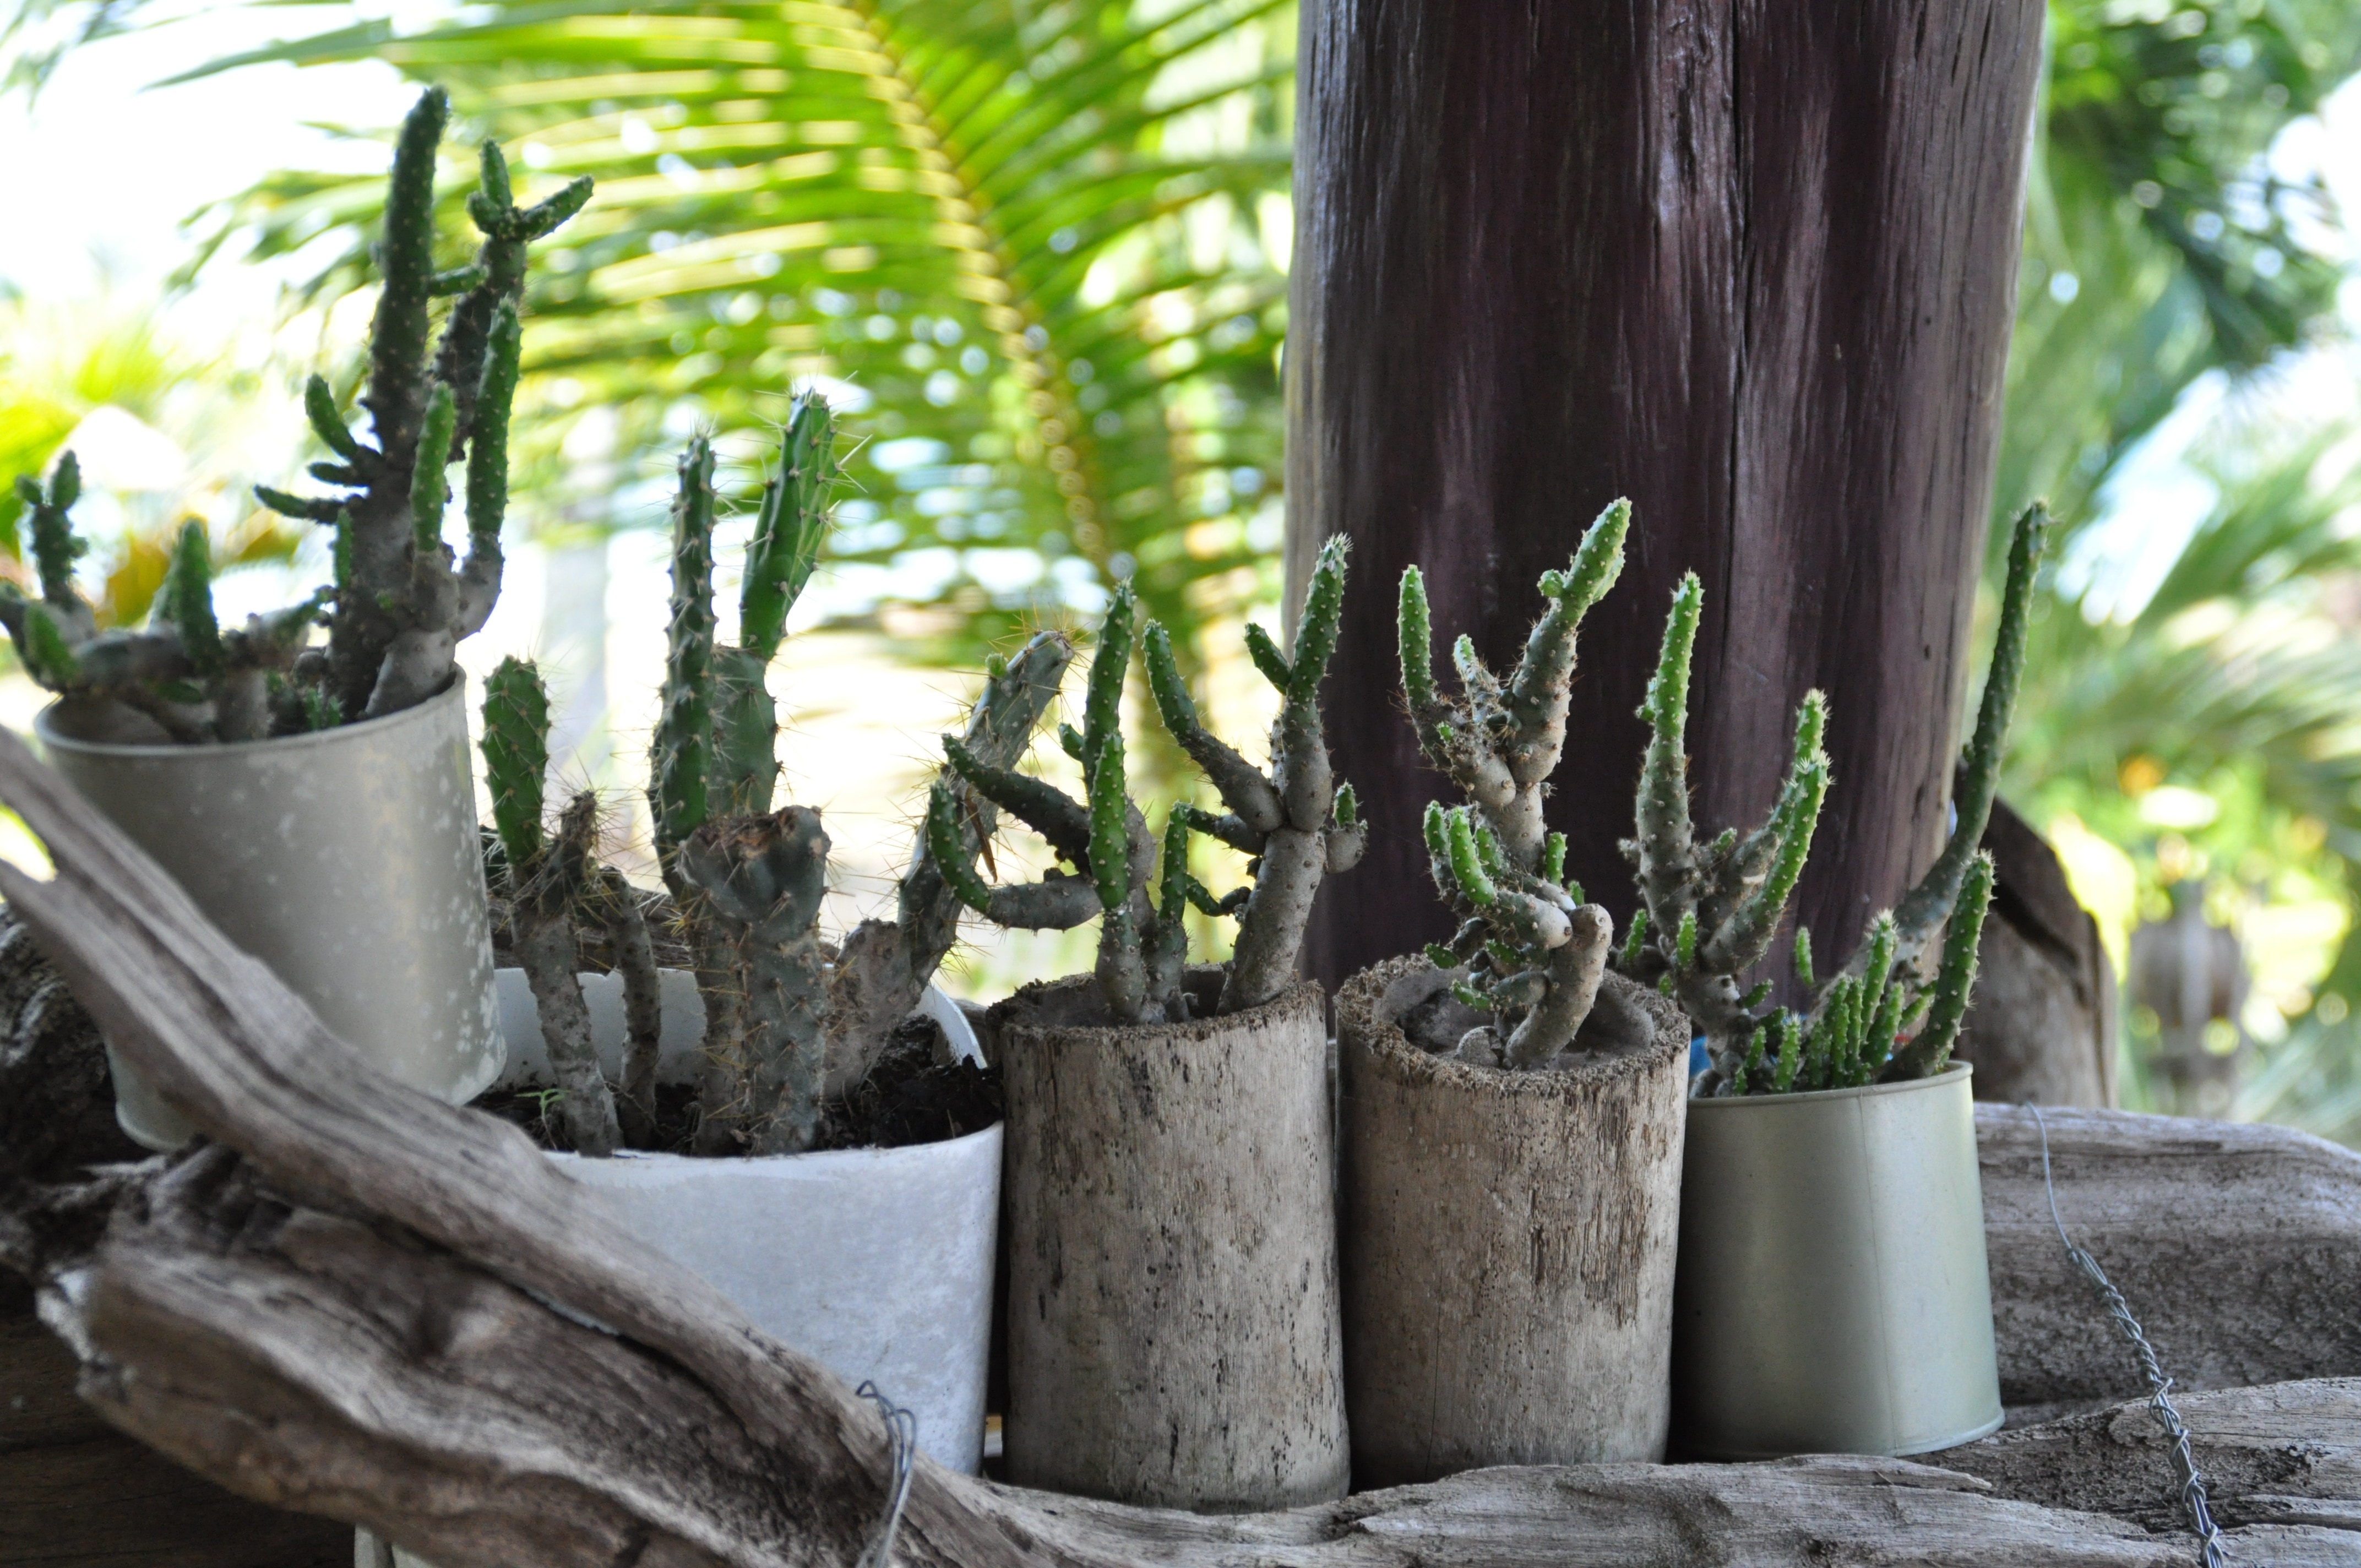 5 vases of cactus